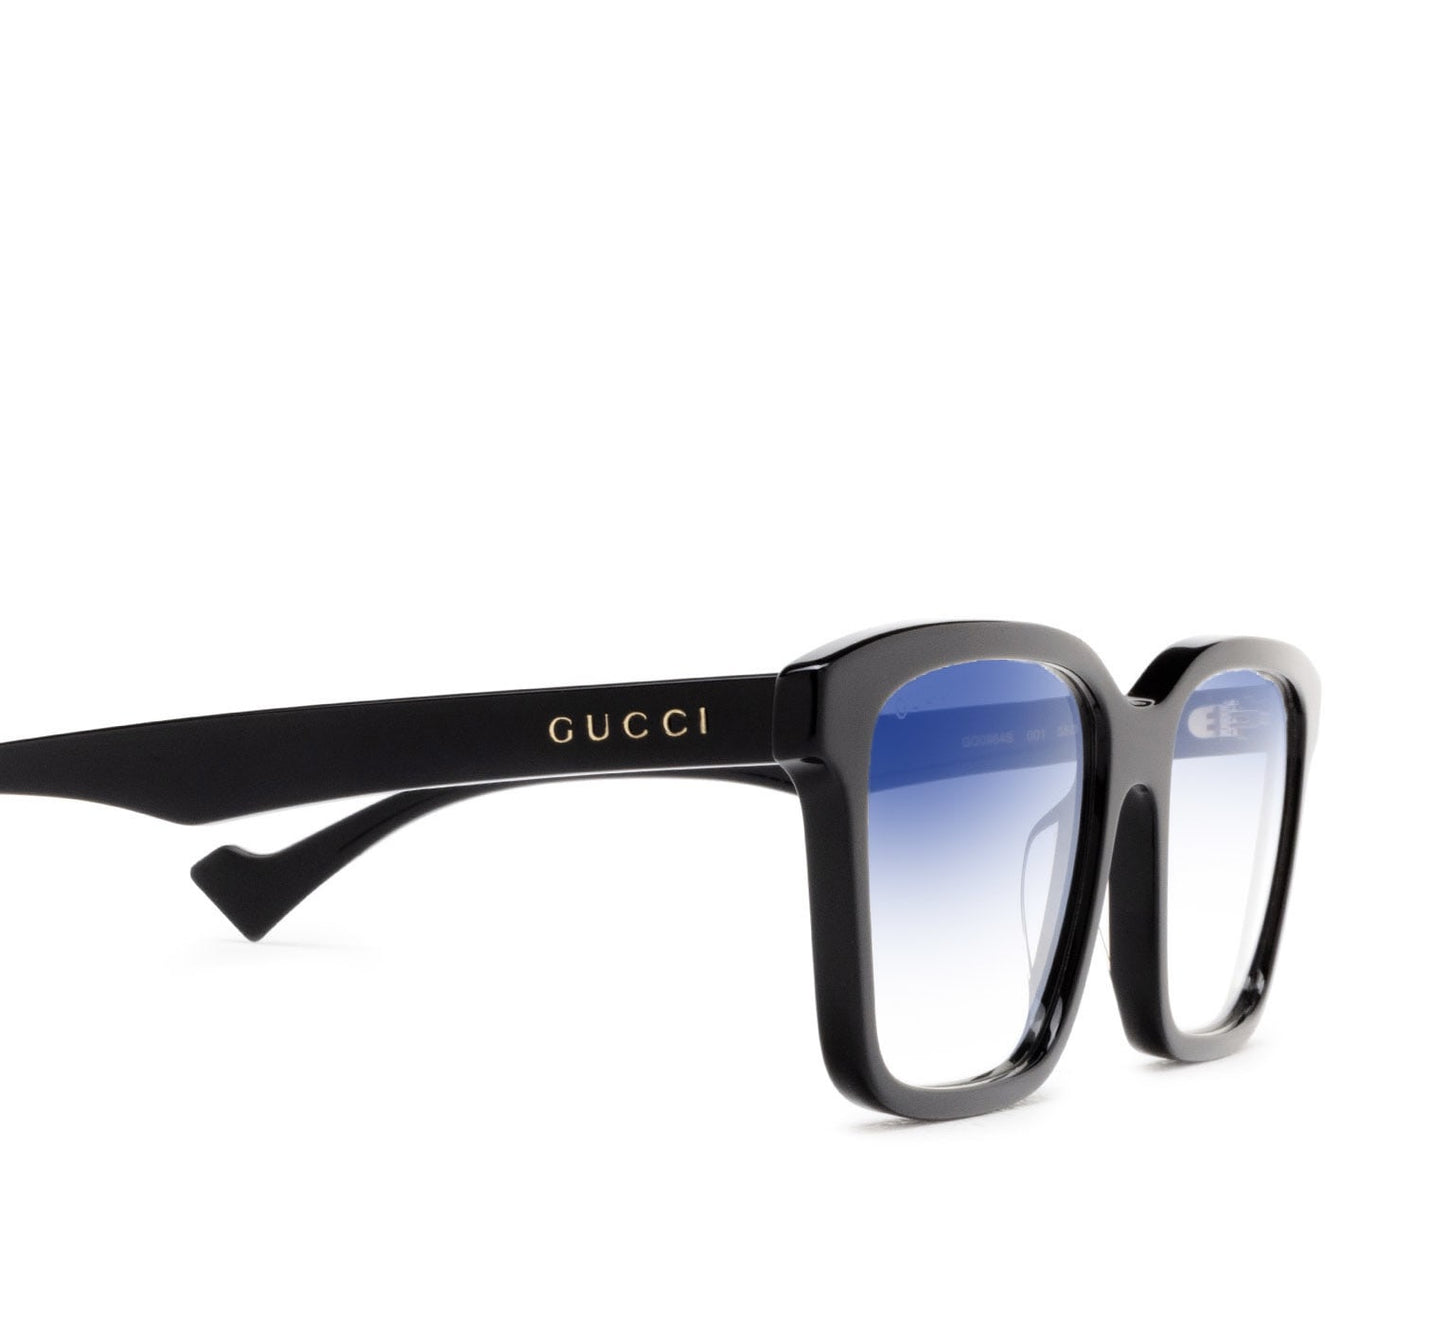 Gucci GG0964S-001 55mm New Sunglasses